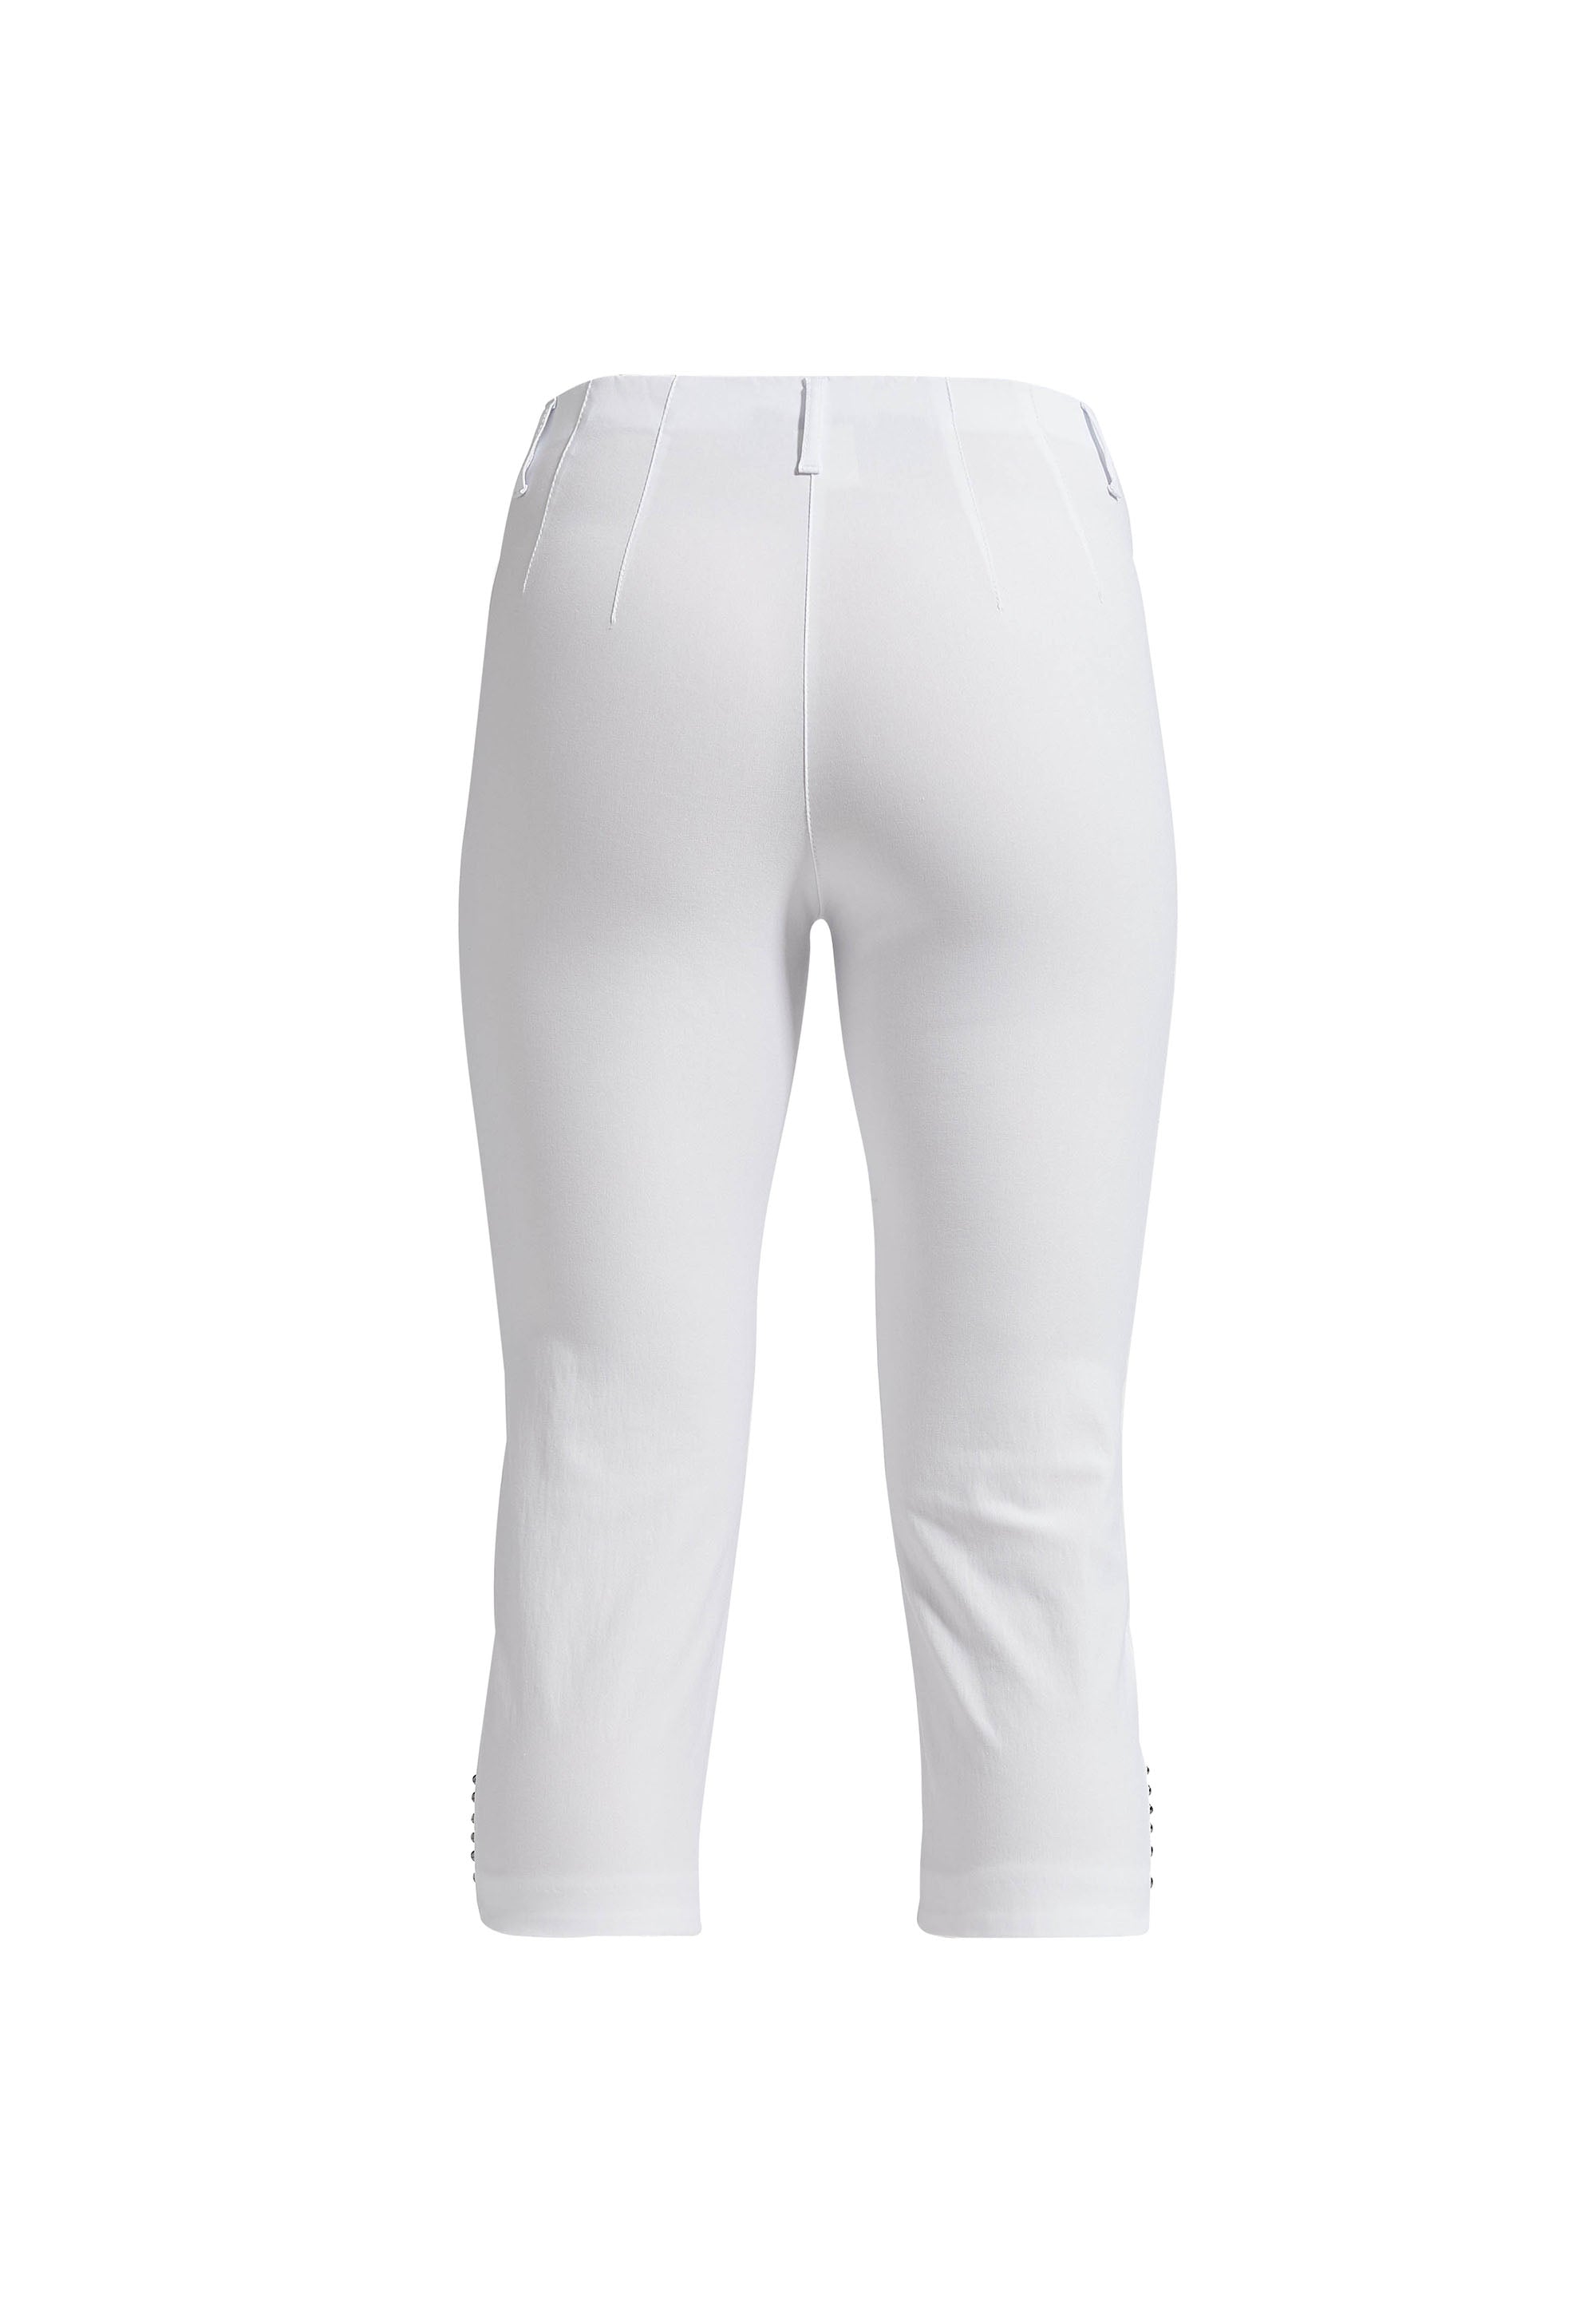 LAURIE Dora Regular Capri Trousers REGULAR 10970 White